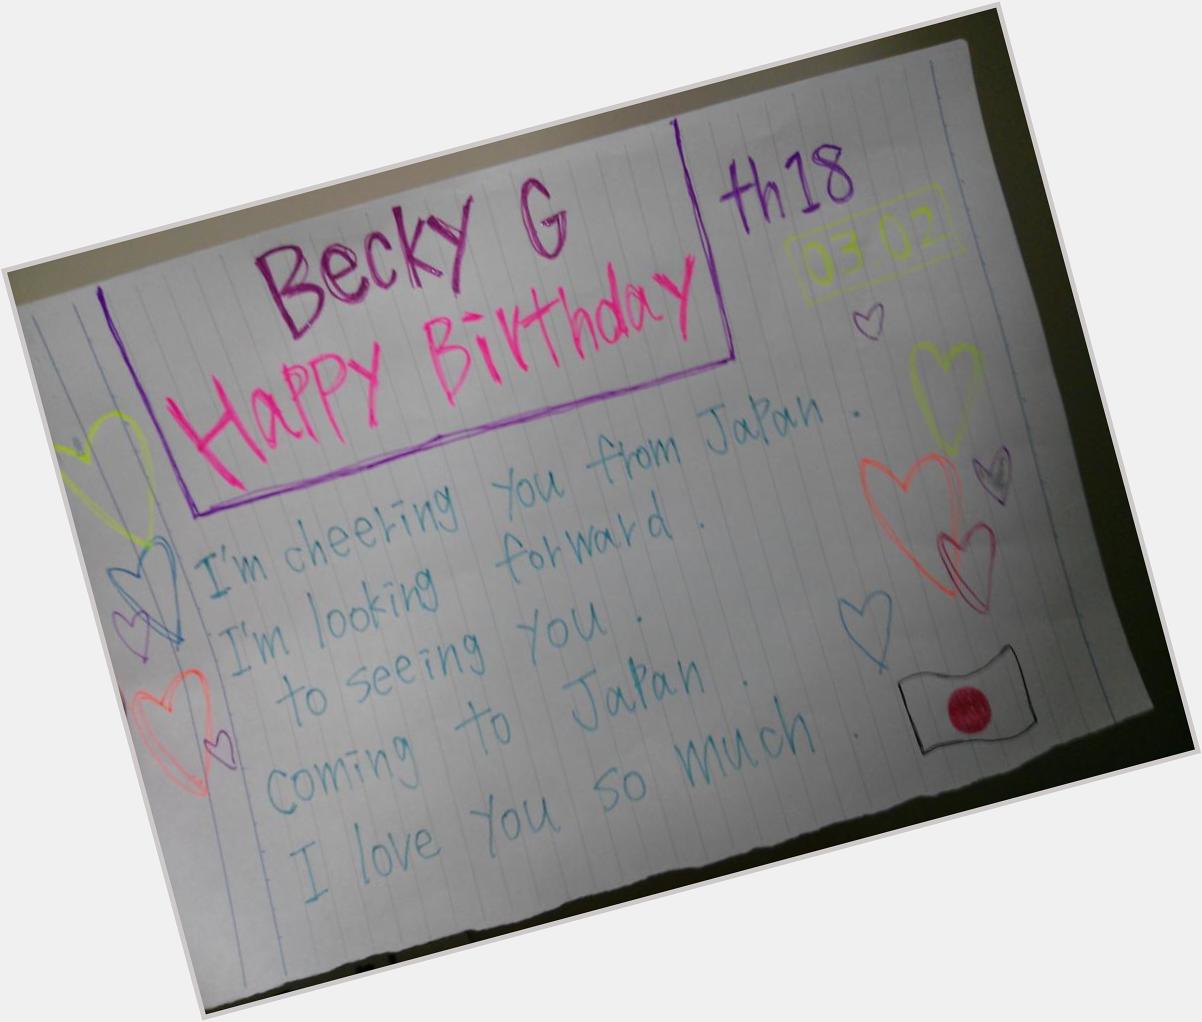  Becky G
Happy Birthday!!! 